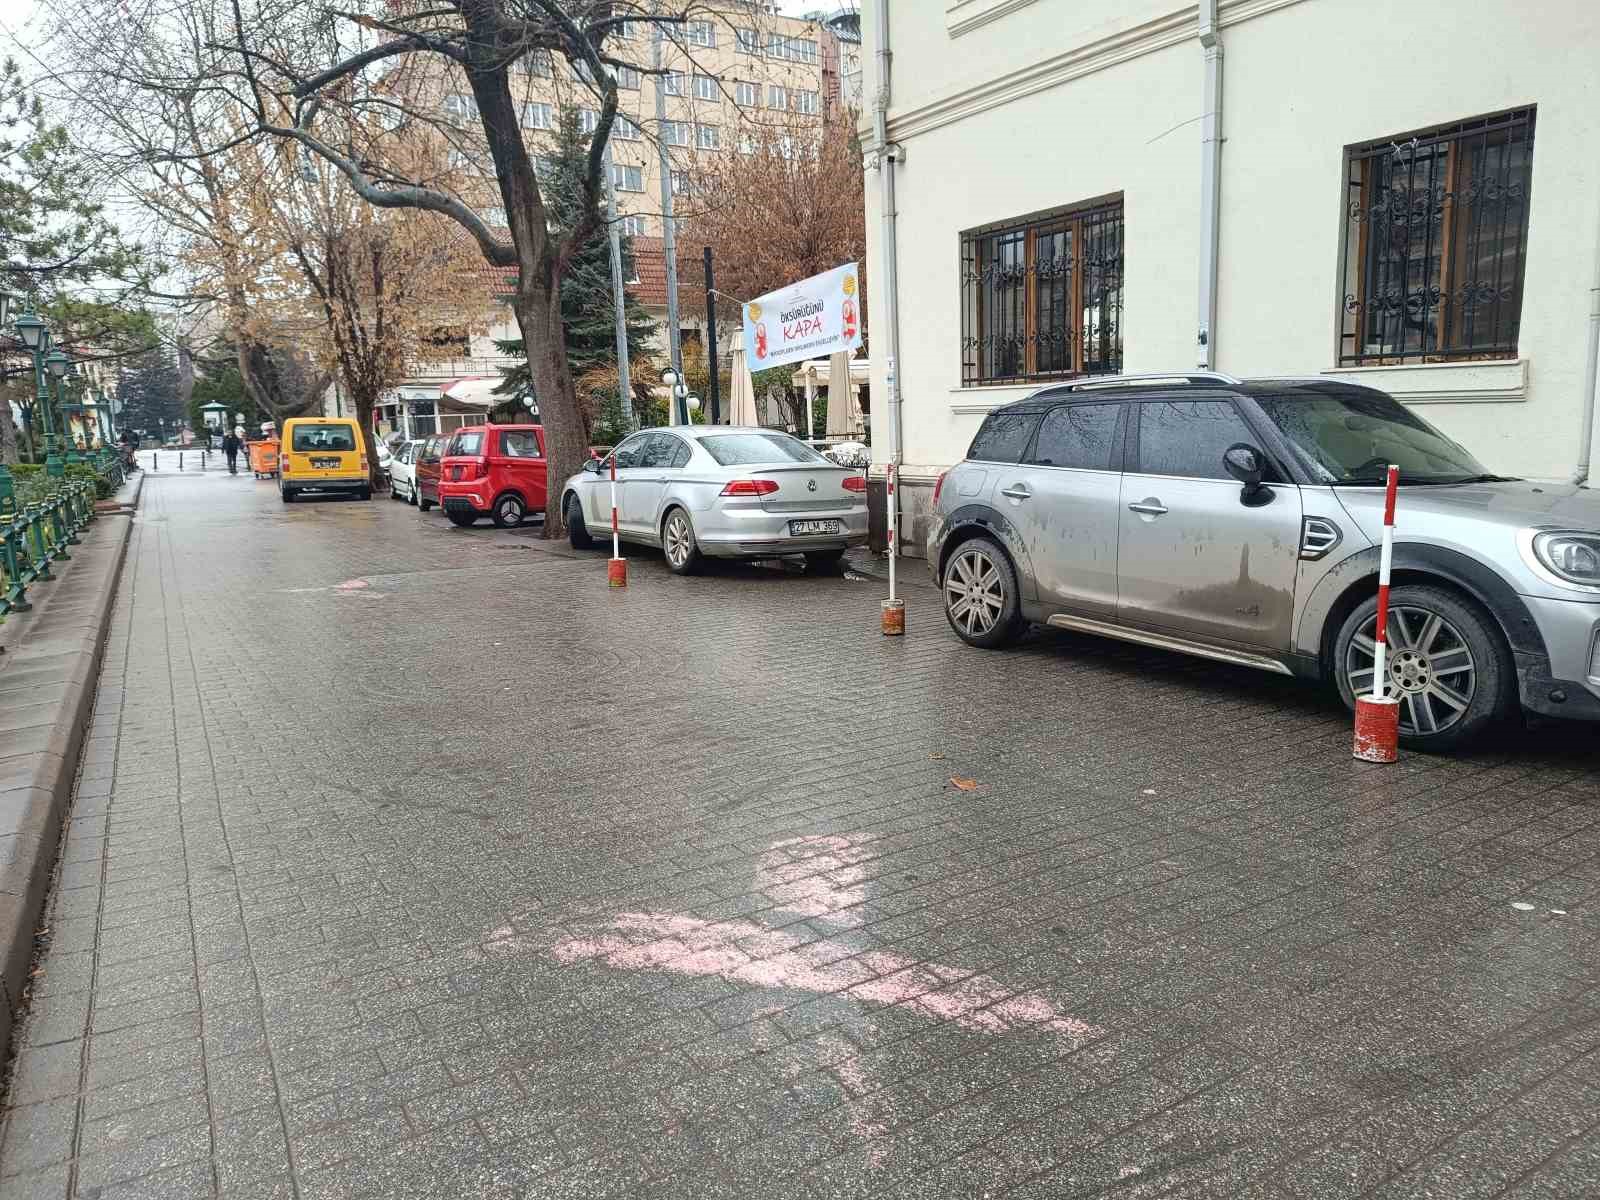 Boş olması gereken alana sürücüler araçlarını park ediyor